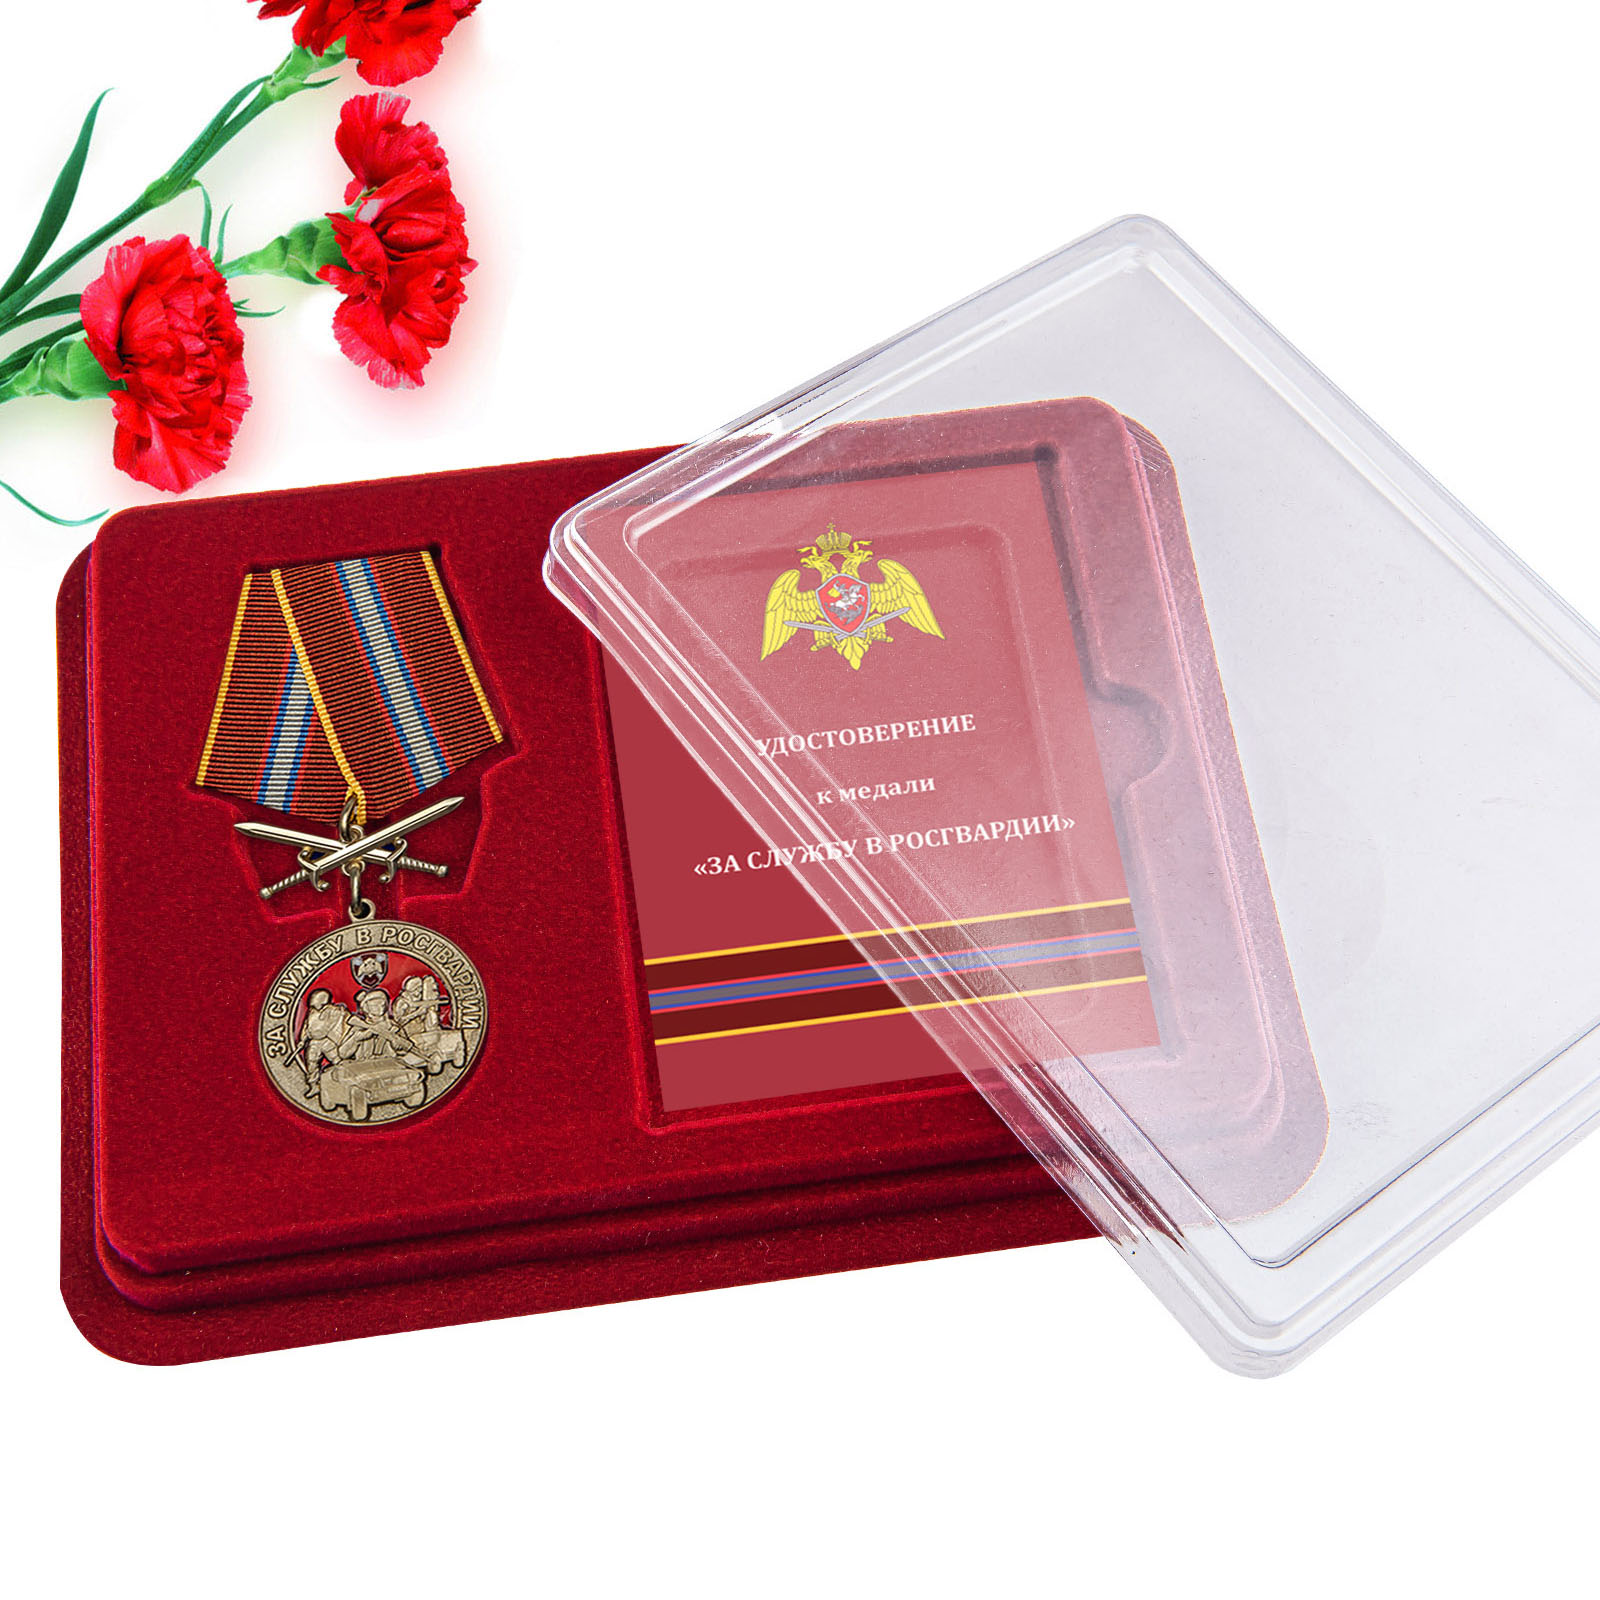 Купить медаль За службу в Росгвардии в подарок онлайн